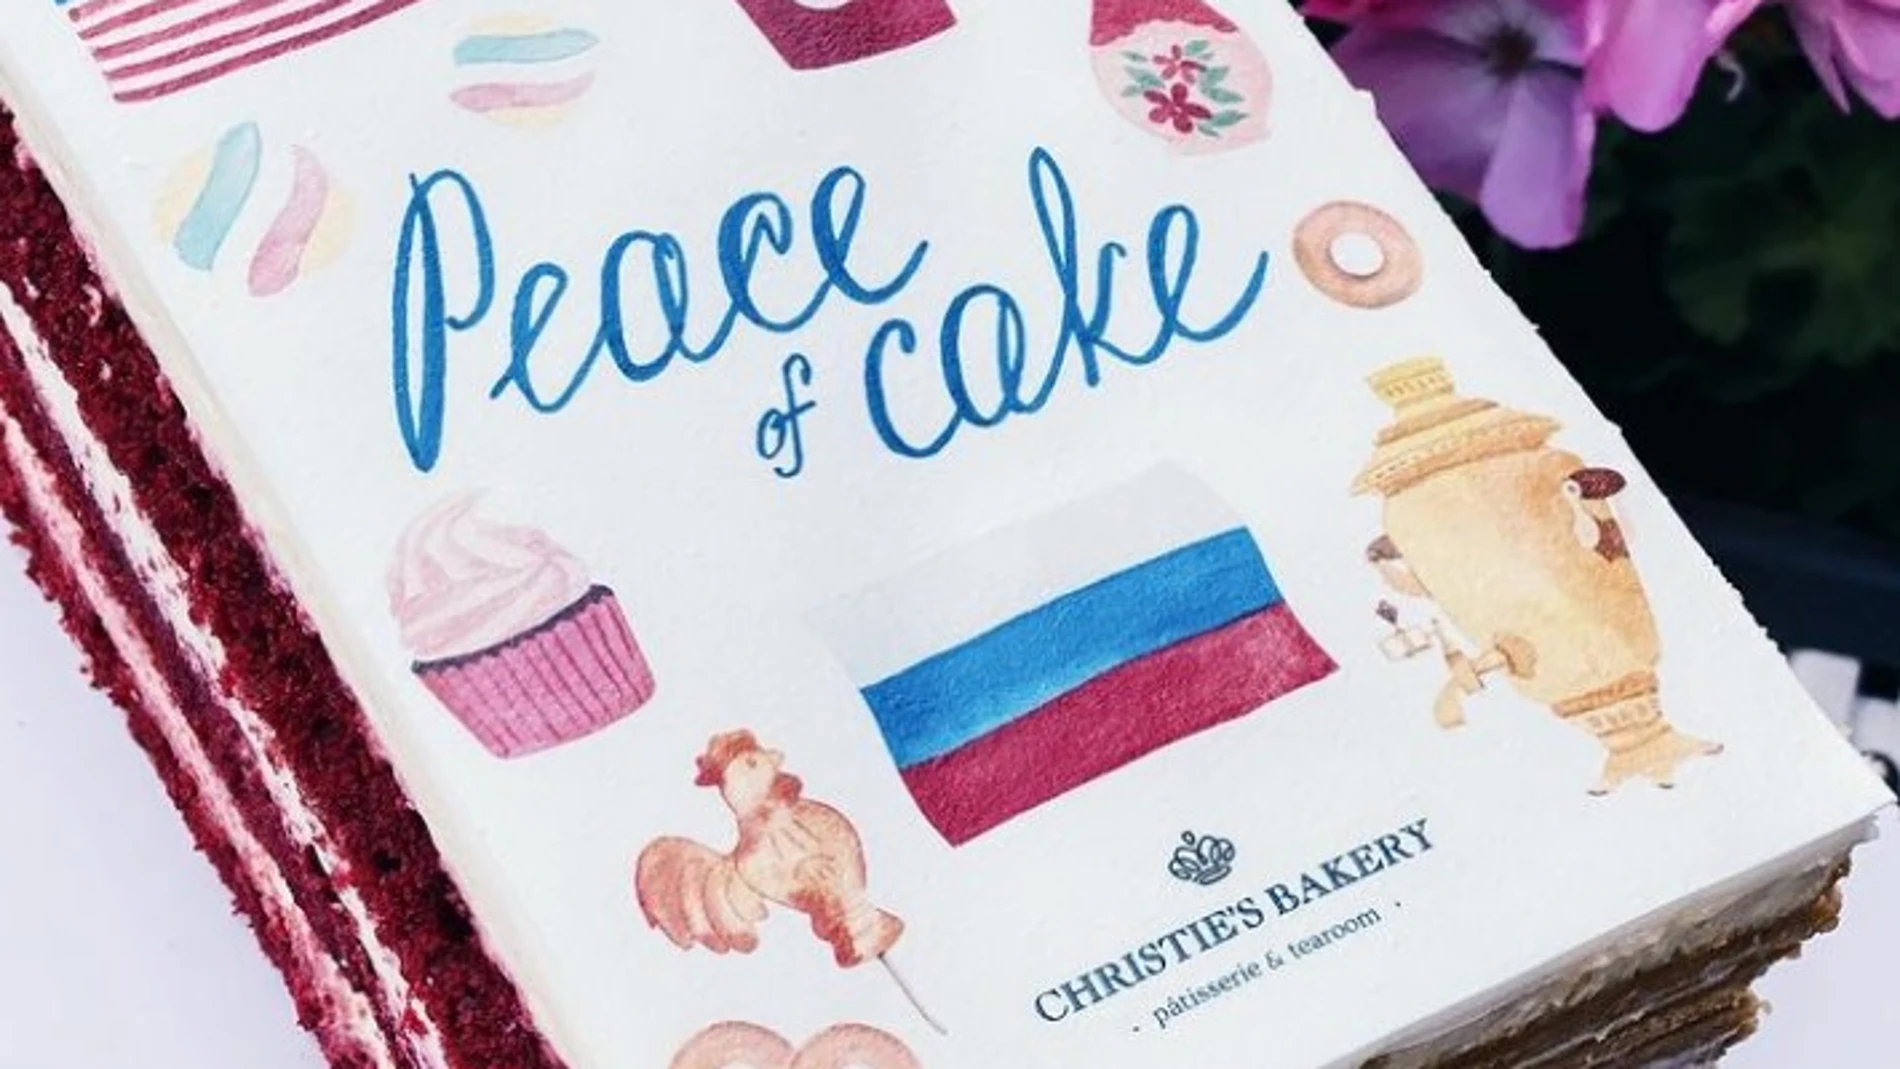 "Tarta de la paz", creada con las tradiciones rusas y estadounidenses. Christie's Bakery